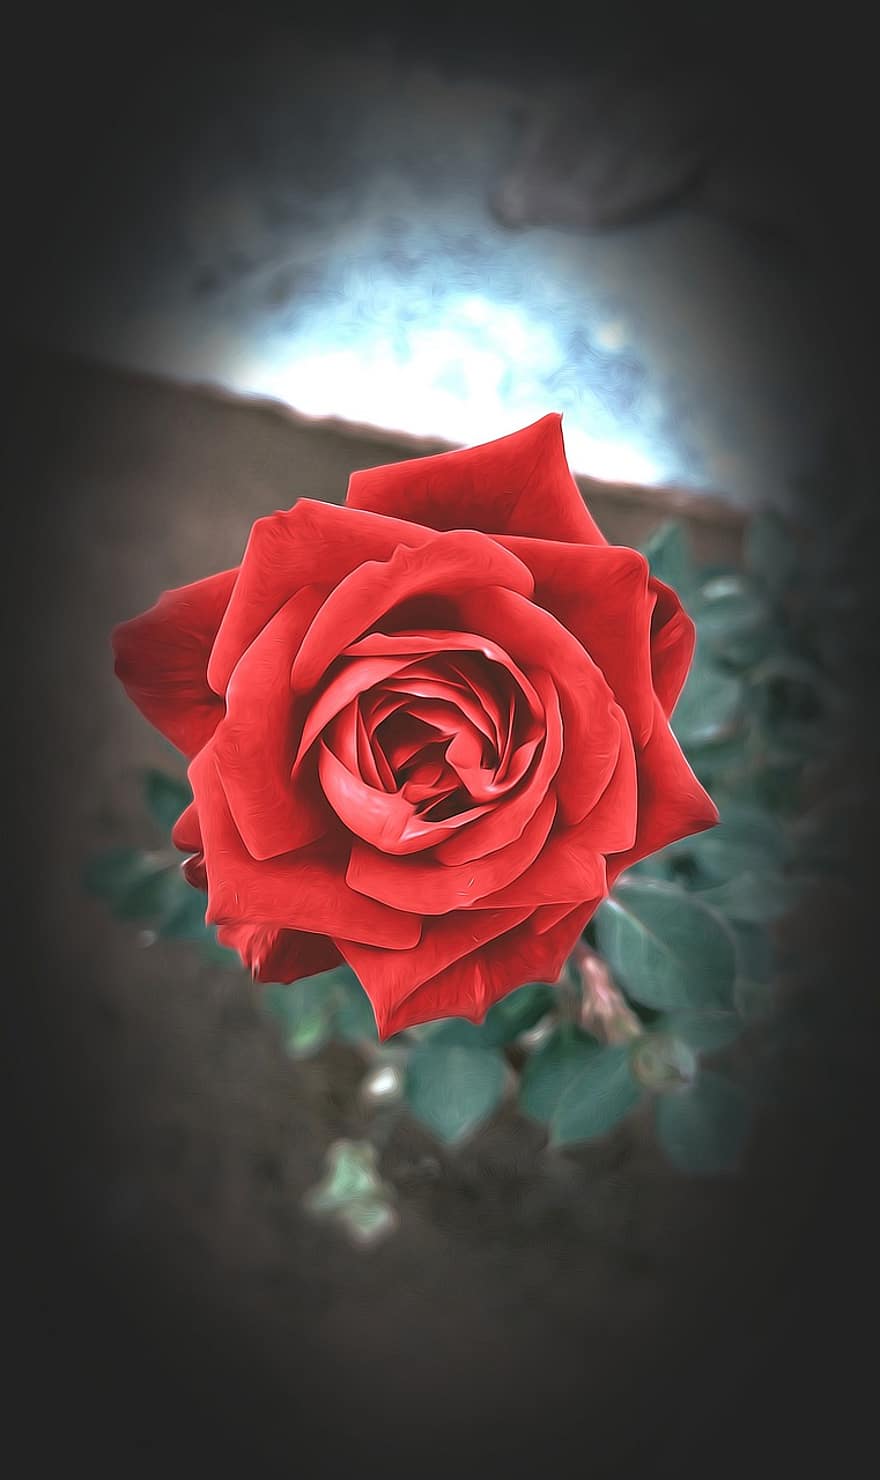 Rose, blomst, plante, rød rose, rød blomst, kronblade, flor, kronblad, tæt på, romantik, blad